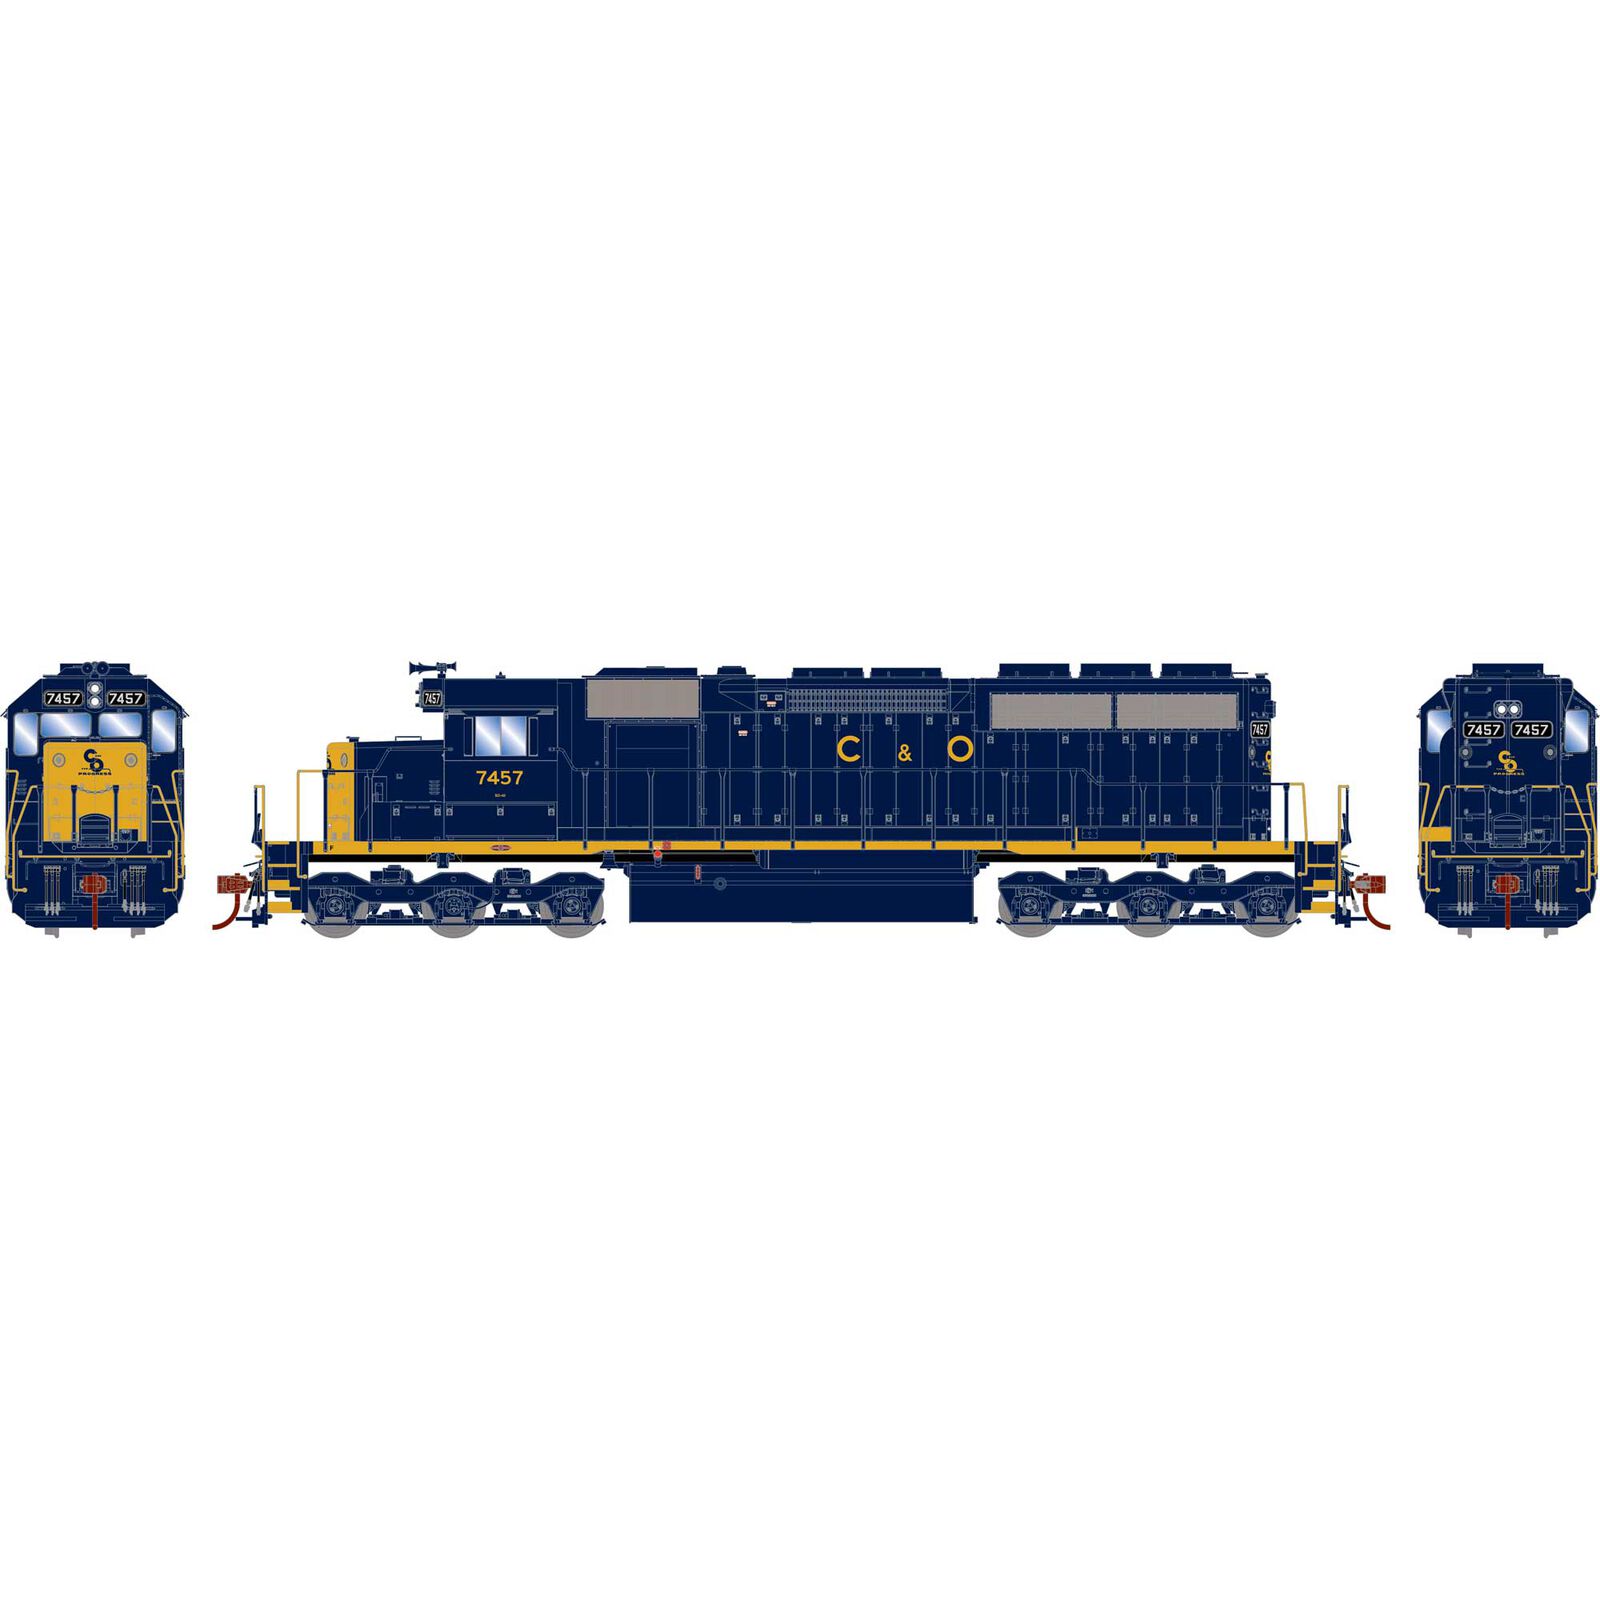 HO SD40 Locomotive, C&O #7457